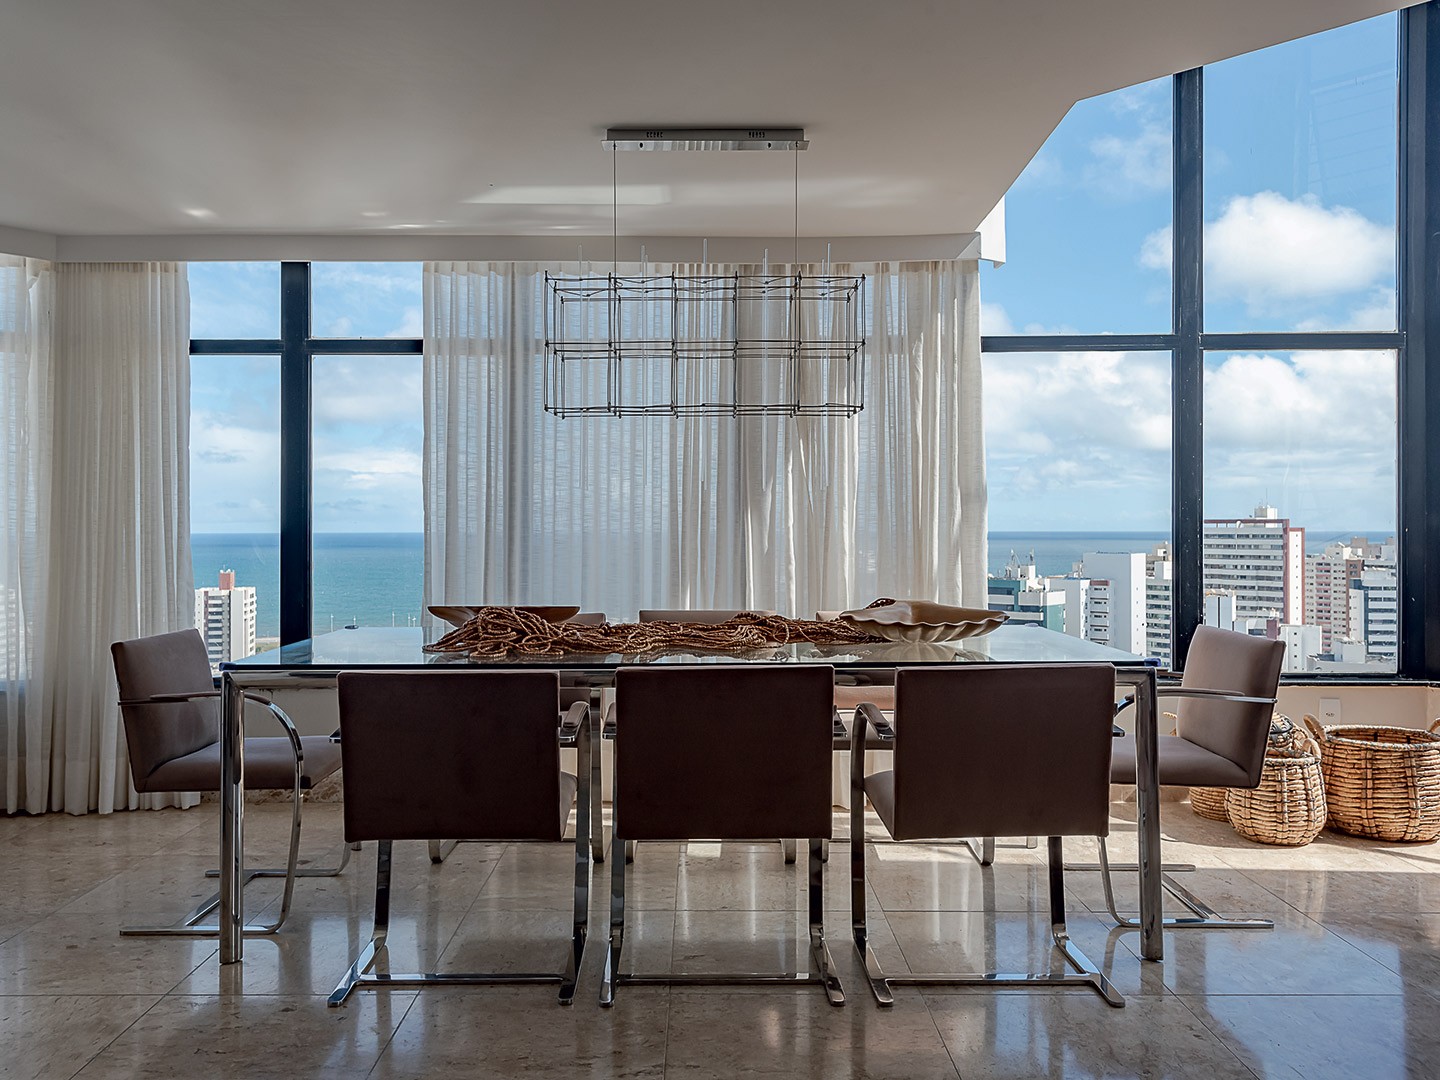 Com vista para o mar, apartamento é convite para relaxar (Foto: Wesley Diego Emes)